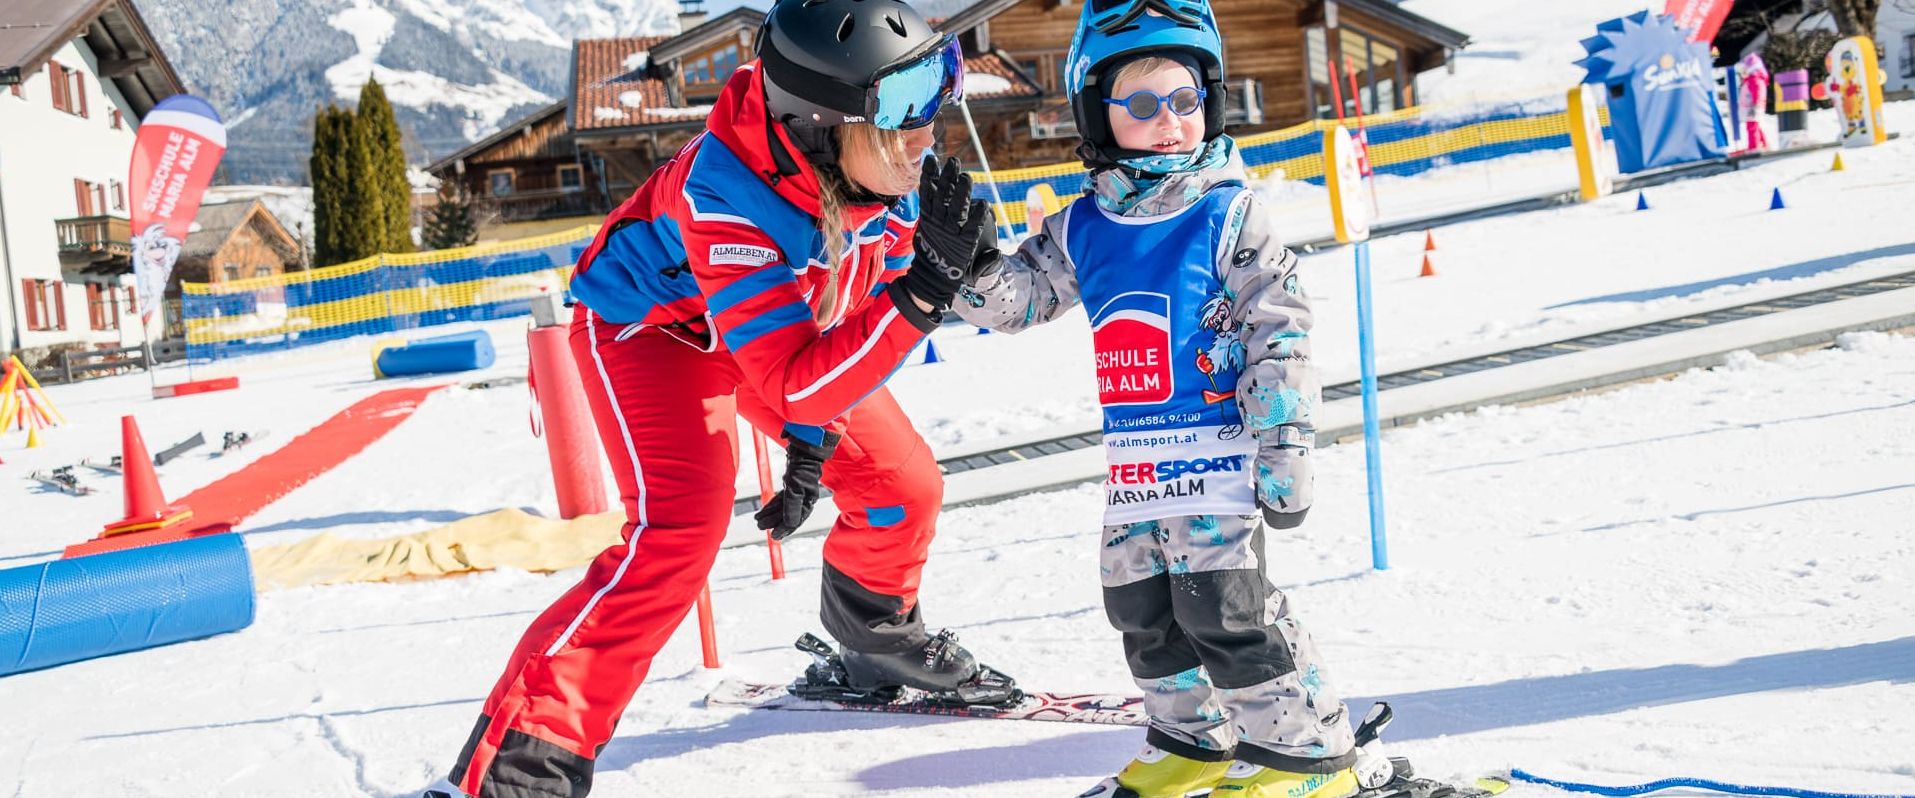 Skikurs für Kleinkinder und Anfänger Maria Alm